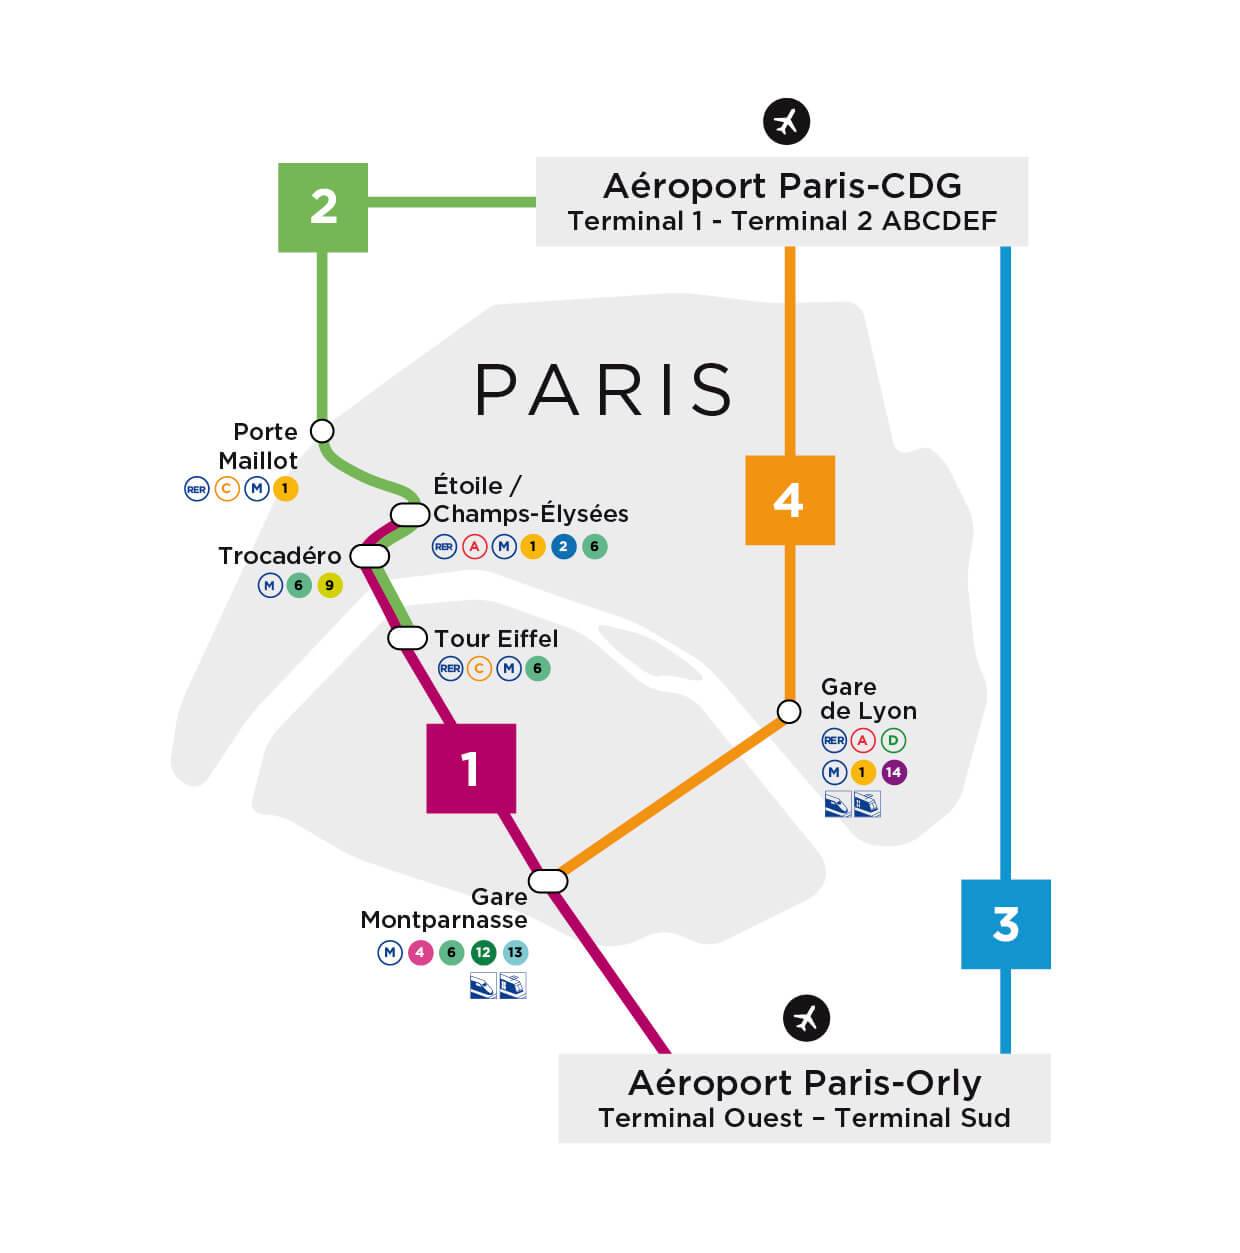 Аэропорт шарль-де-голль: как добраться до парижа - safetravels.info - безопасный туризм и отдых